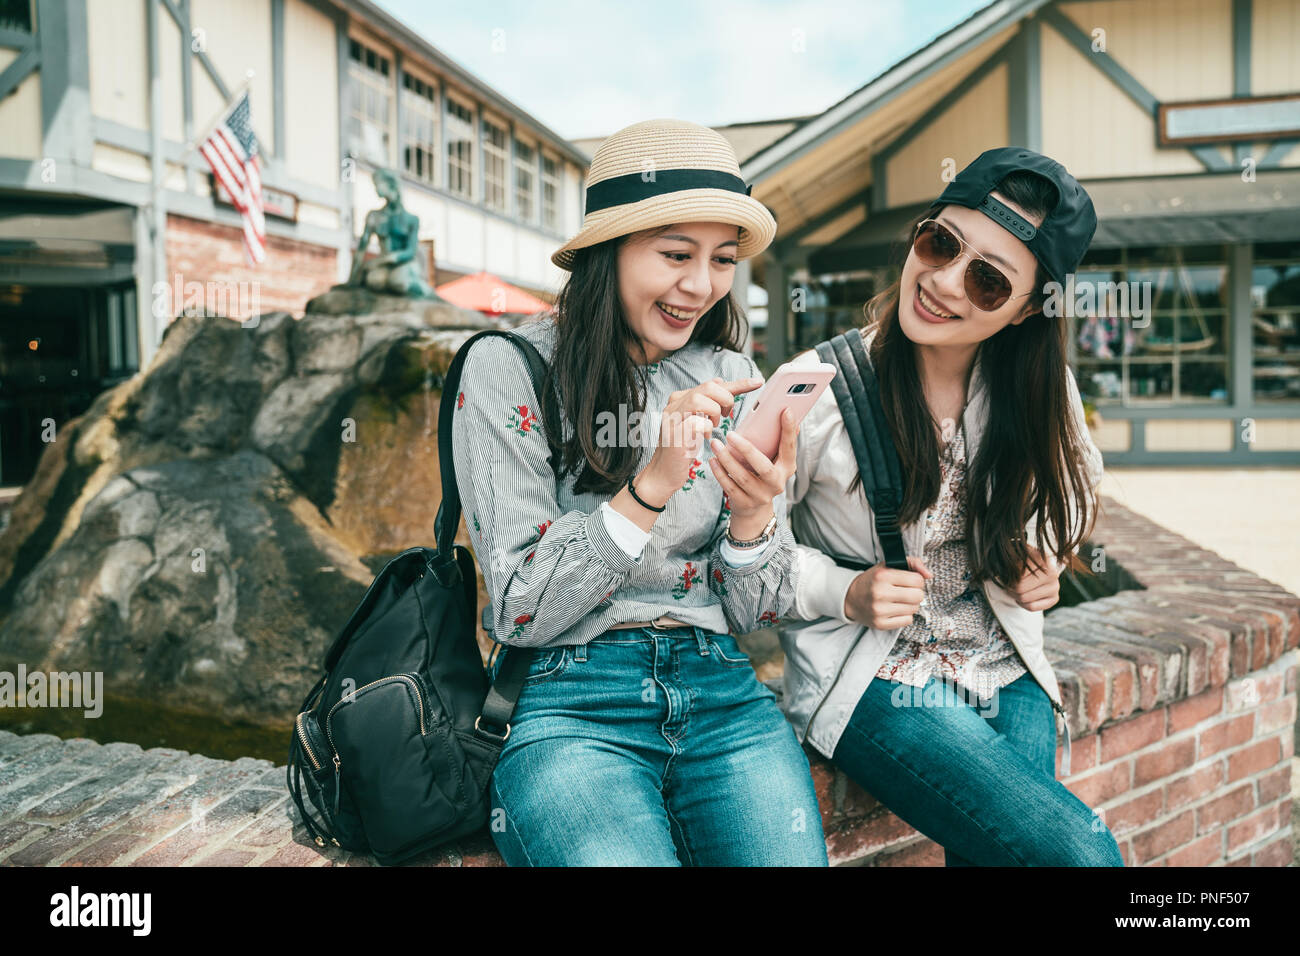 Zwei glückliche Mädchen reden und freudig lachend, während einer Pause sitzen neben dem Brunnen Stockfoto